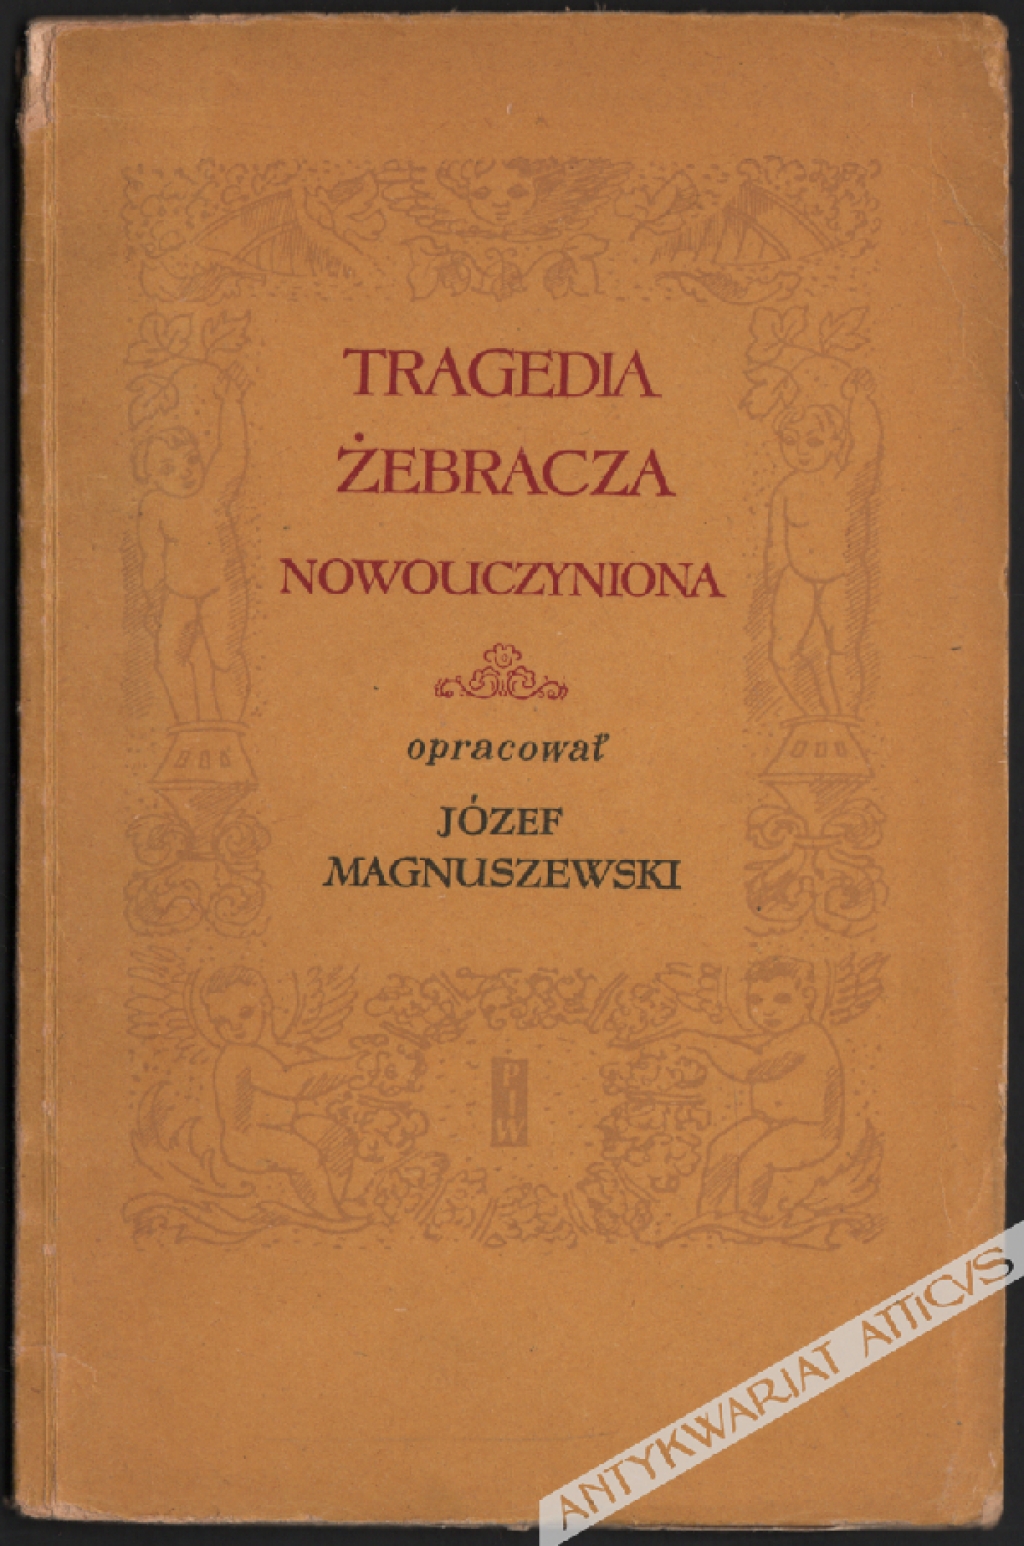 Tragedia żebracza nowouczyniona. Dochowany fragment polski z r. 1552 uzupełnił przekładem przeróbki czeskiej powstałej po r. 1575 Józef Magnuszewski